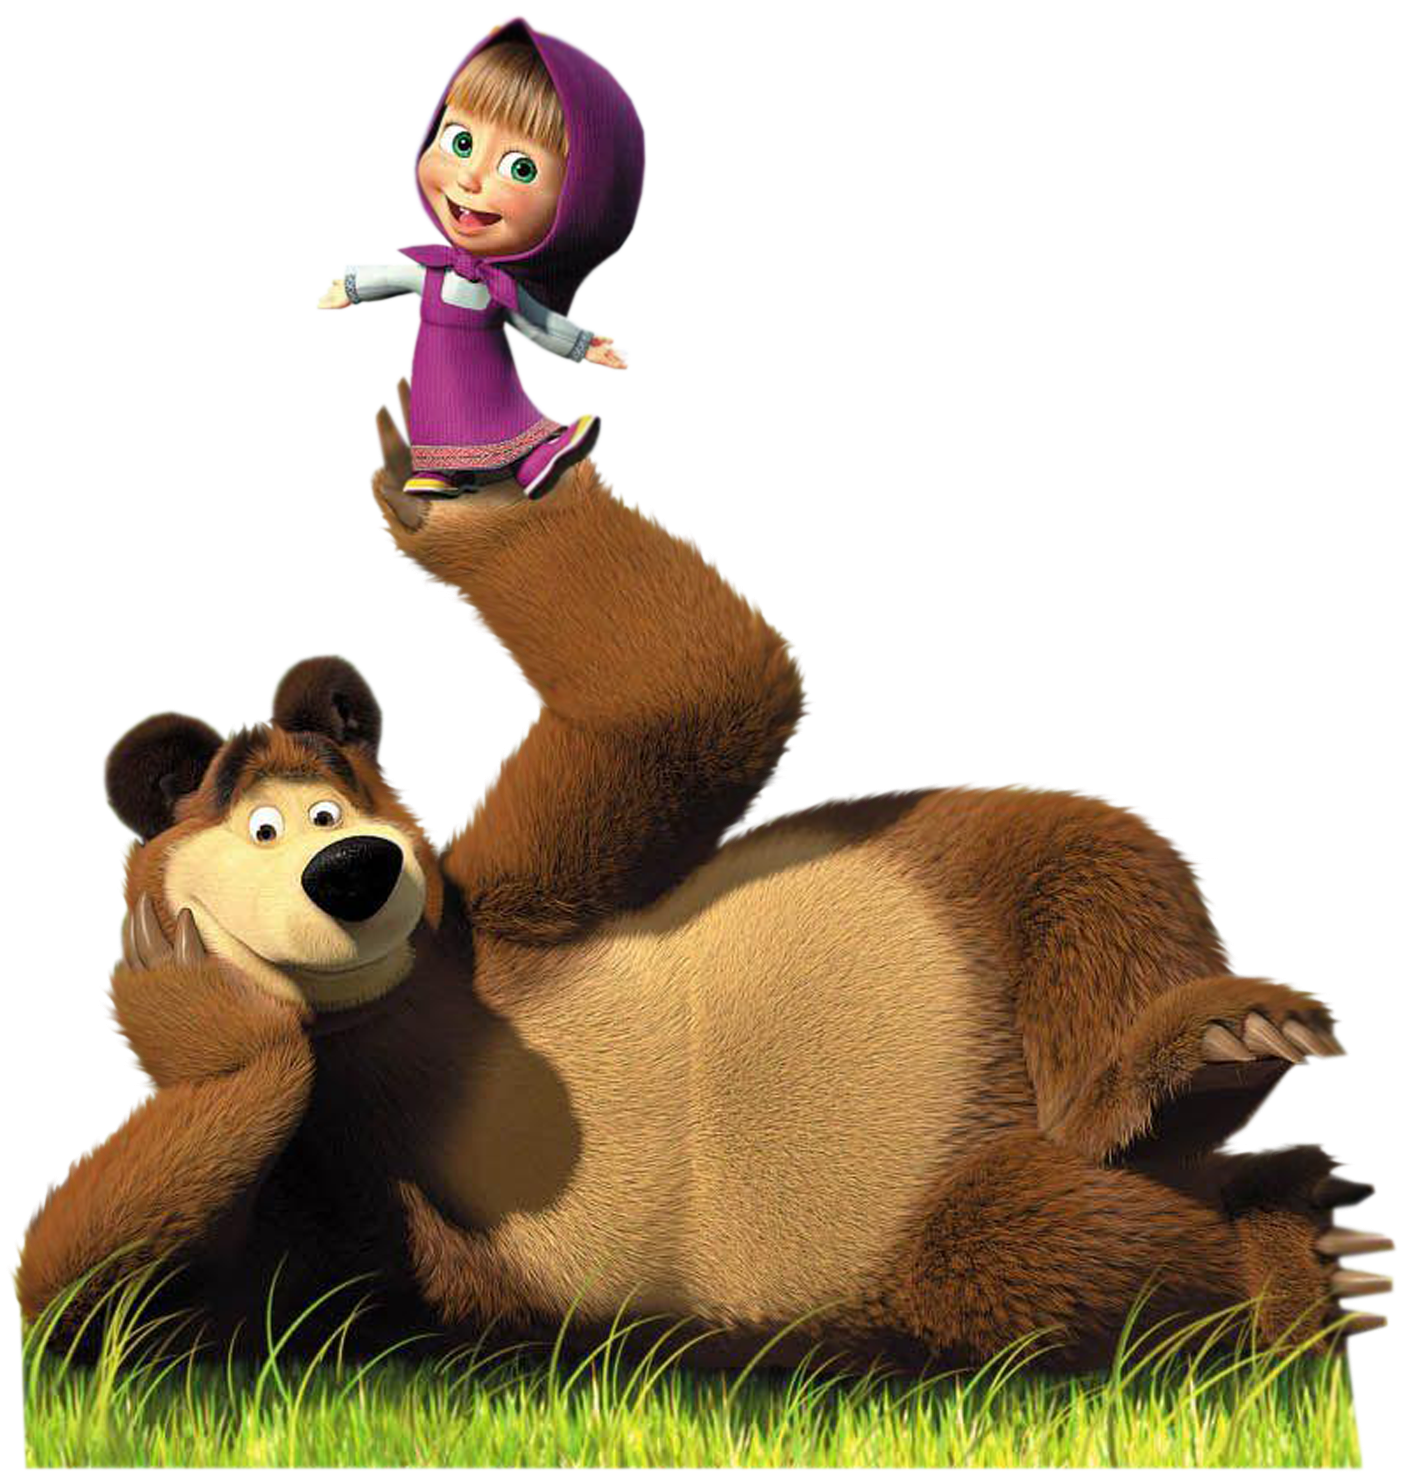 Masha e urso. Медведь с мультфильма Маша и медведь. Маша и медведь на белом фоне медведь машет. Герои мультфильма Маша и медведь.